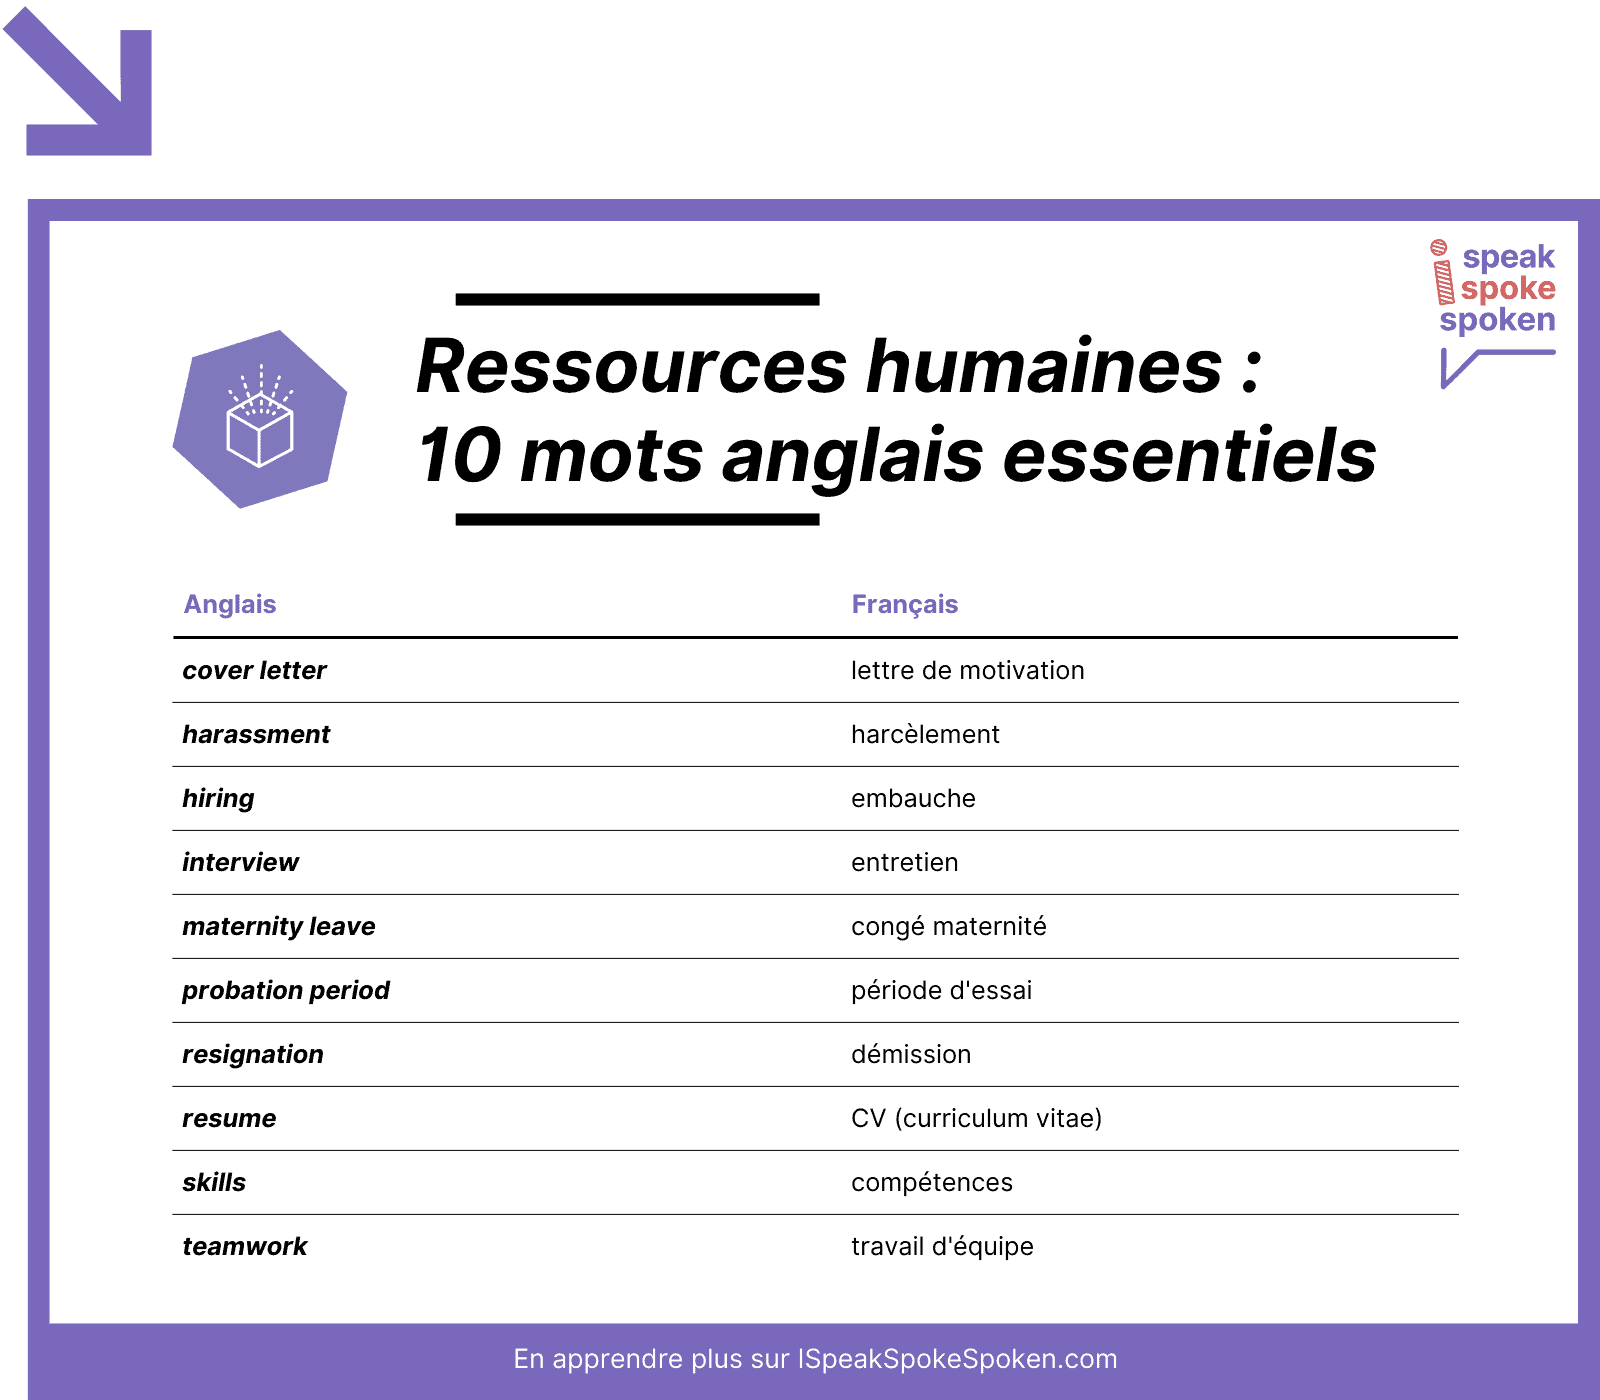 10 mots de vocabulaire anglais essentiels liés aux ressources humaines